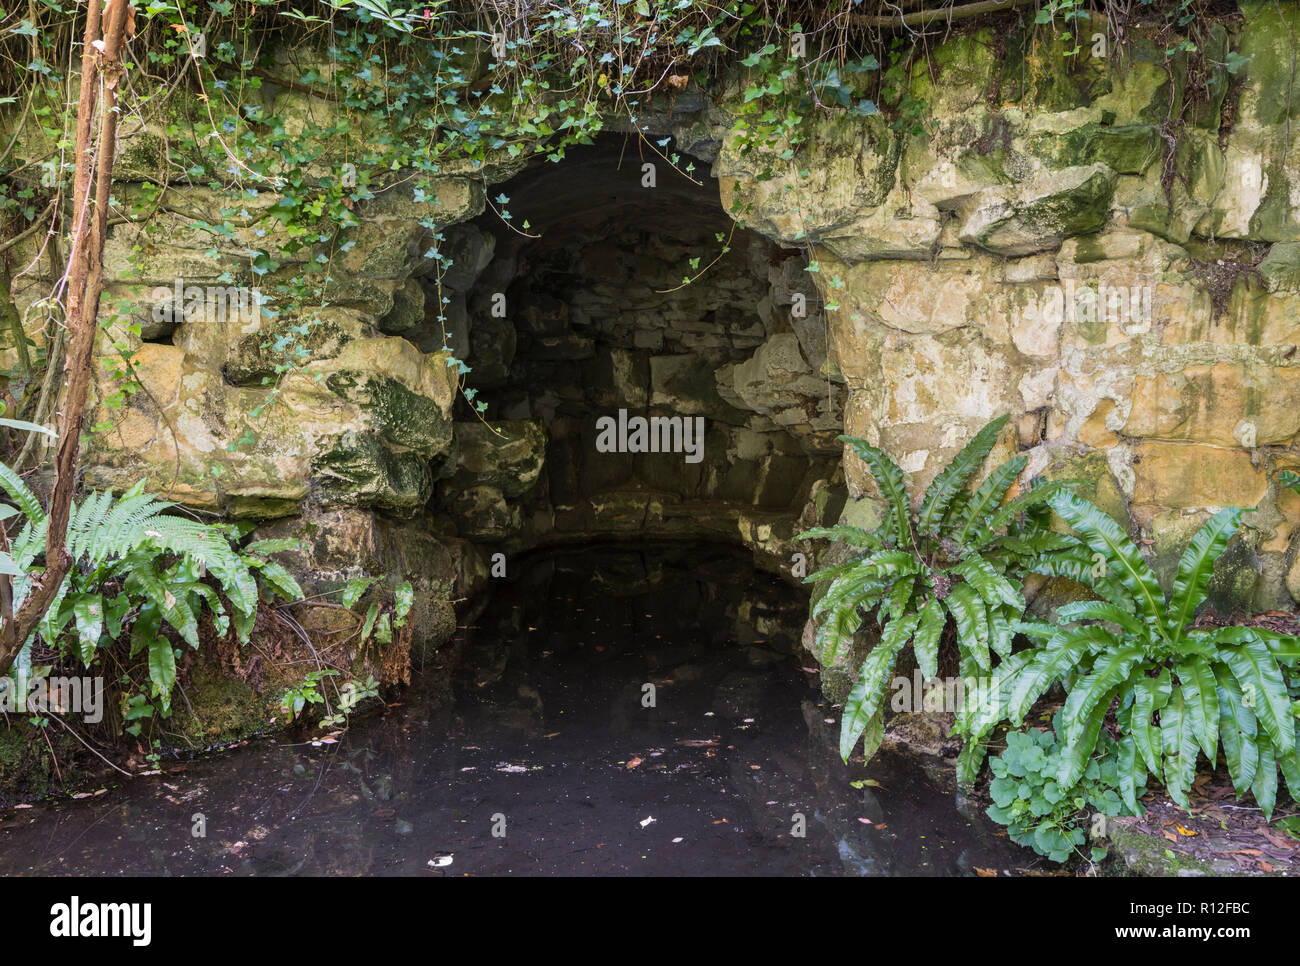 Highdown le four à chaux, un four en brique bordée à l'étang, à la recherche comme une petite grotte, à Highdown Gardens, West Sussex, Angleterre, Royaume-Uni. Banque D'Images